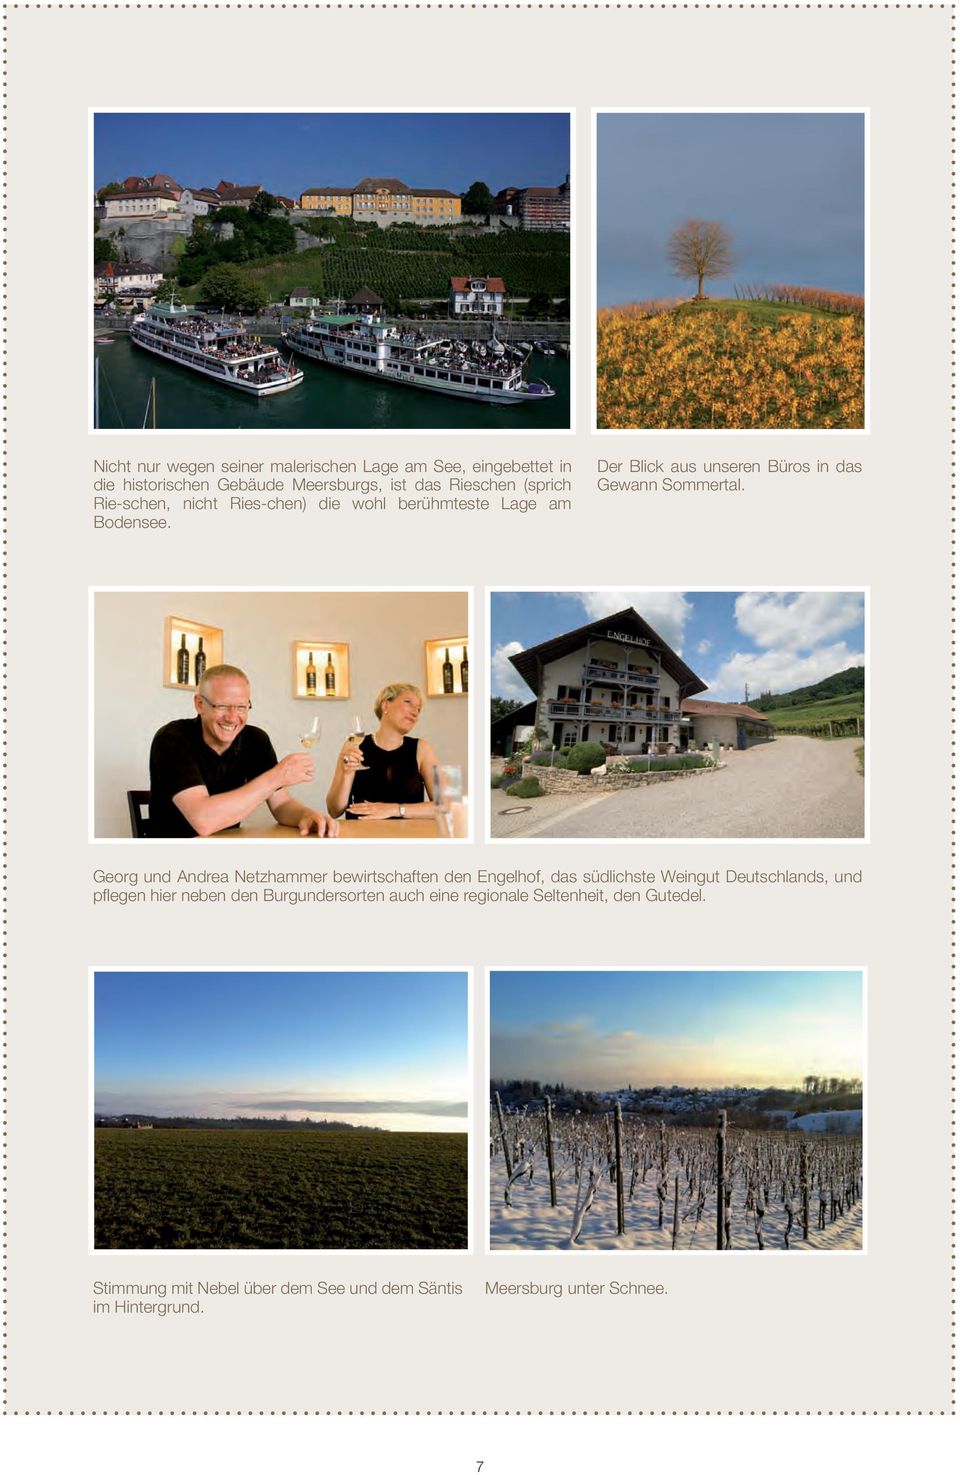 Georg und Andrea Netzhammer bewirtschaften den Engelhof, das südlichste Weingut Deutschlands, und pflegen hier neben den